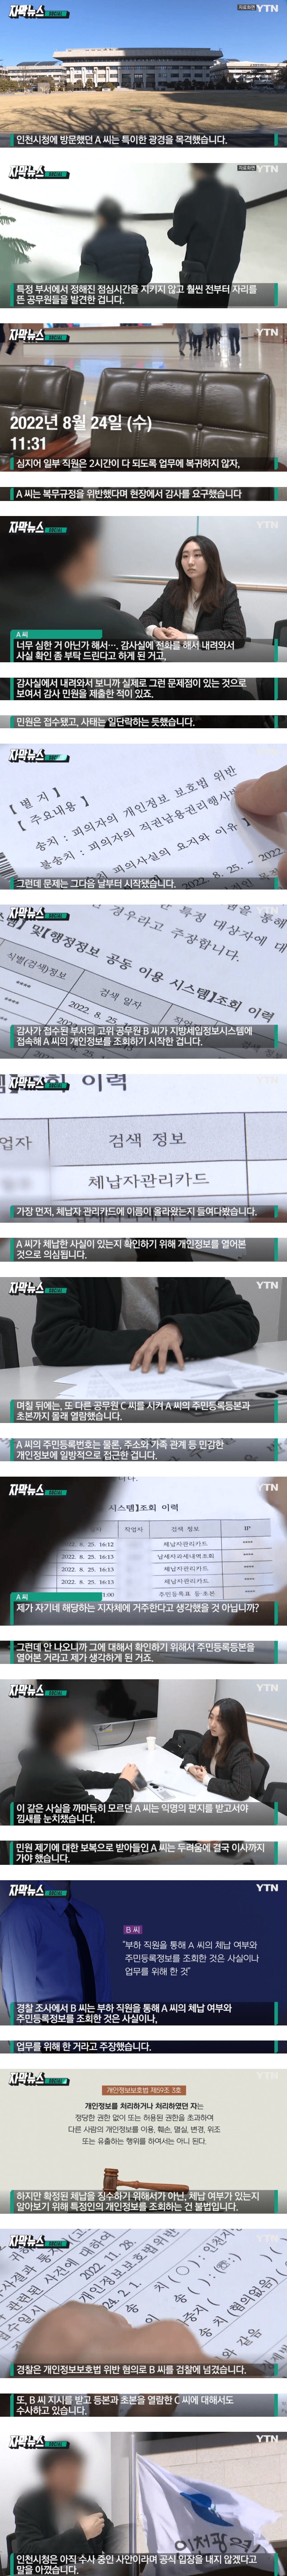 감사 요구한 민원인 개인정보 몰래 열람 - 3